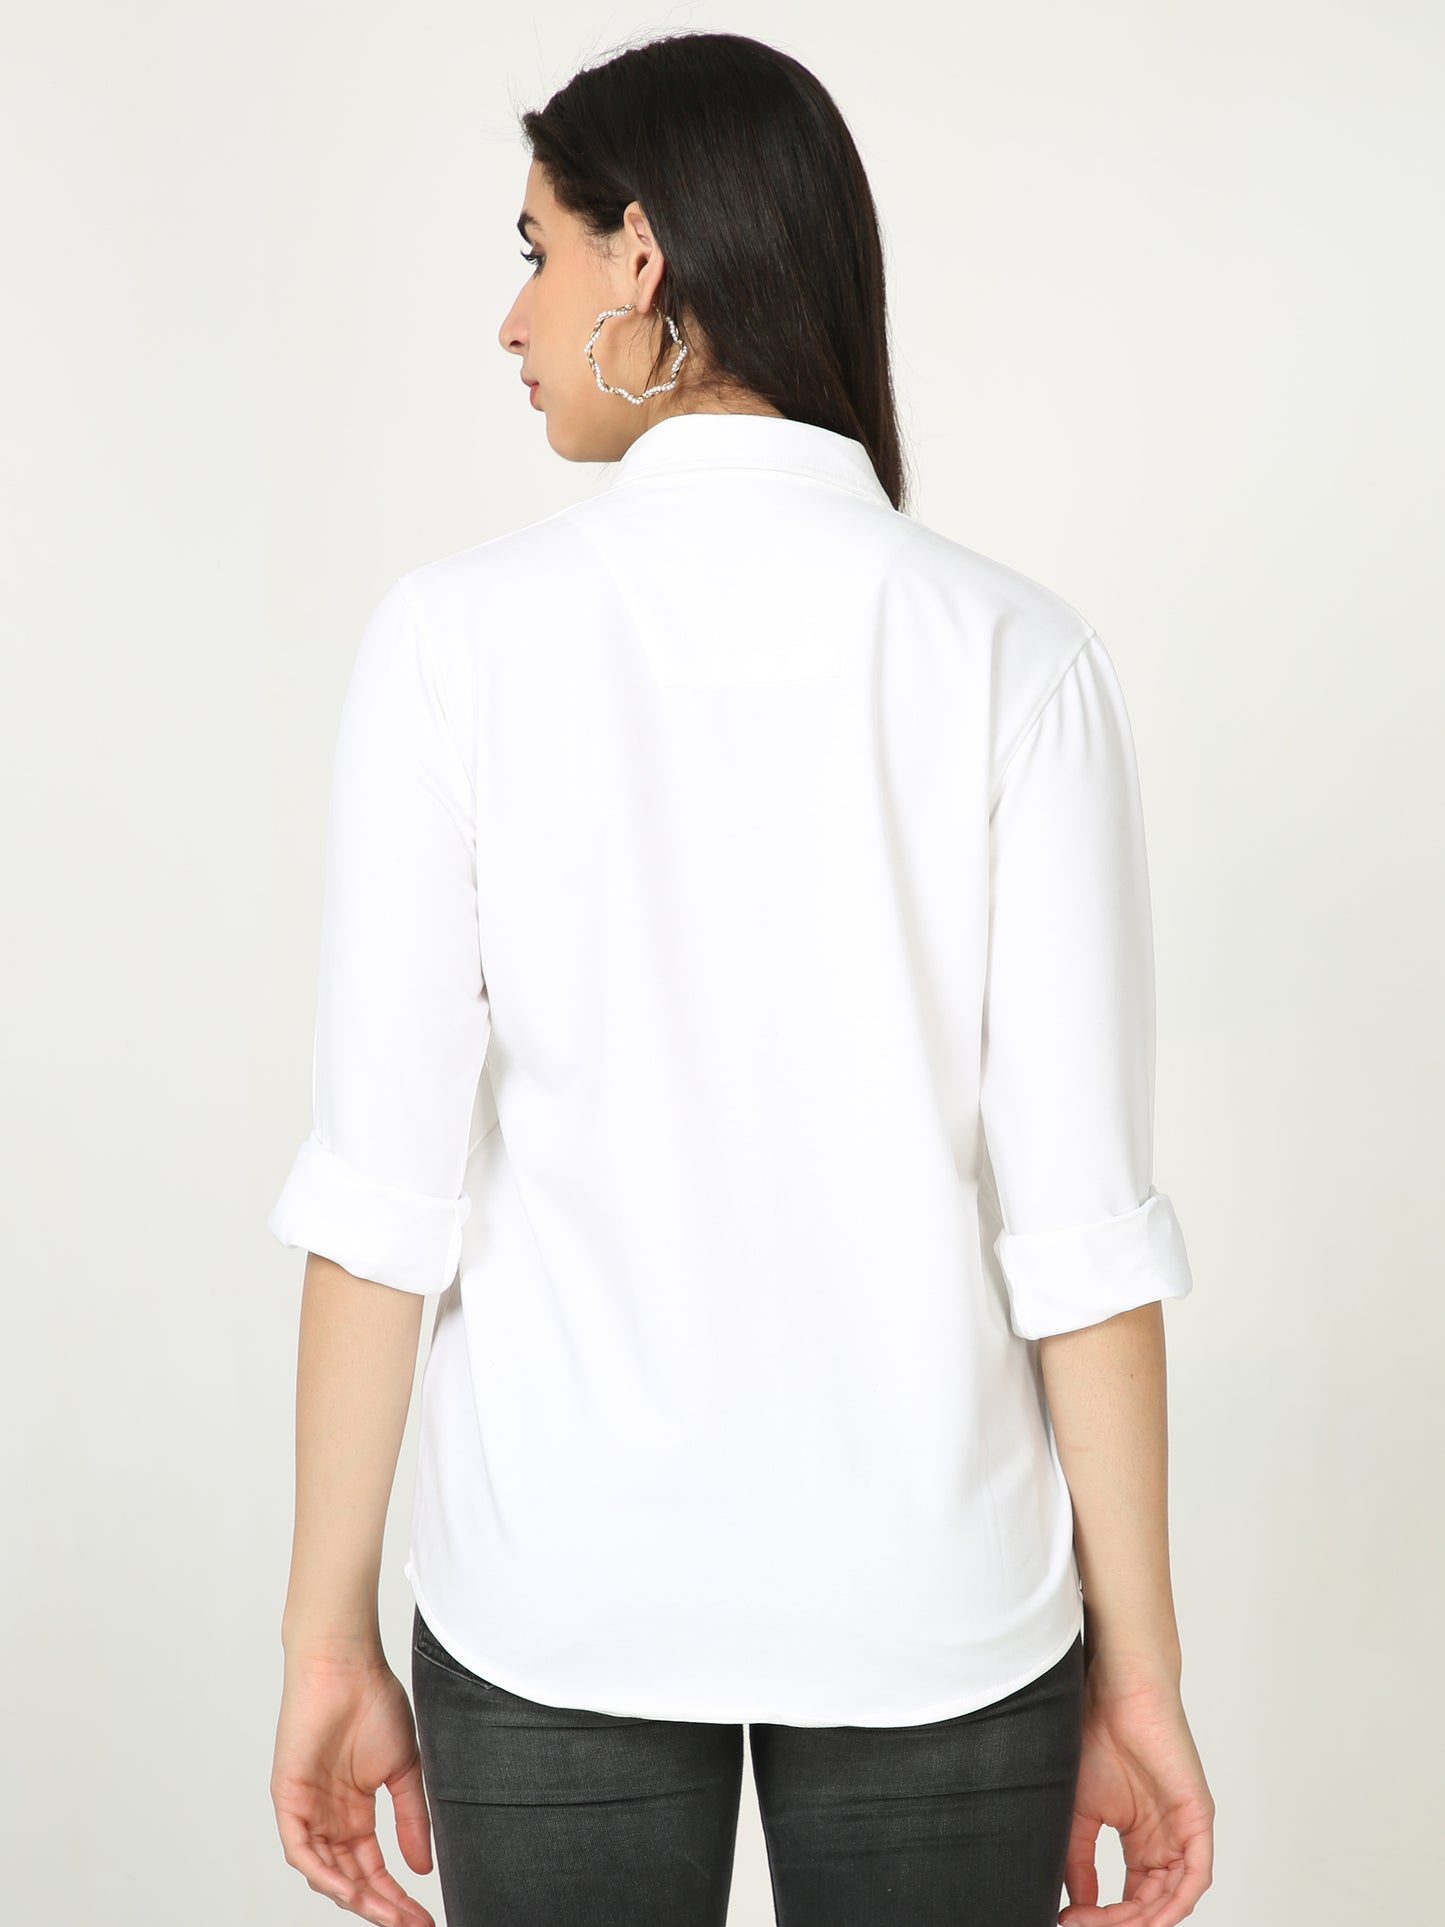 White Double Pocket Royal Knit Overshirt - UNISEX